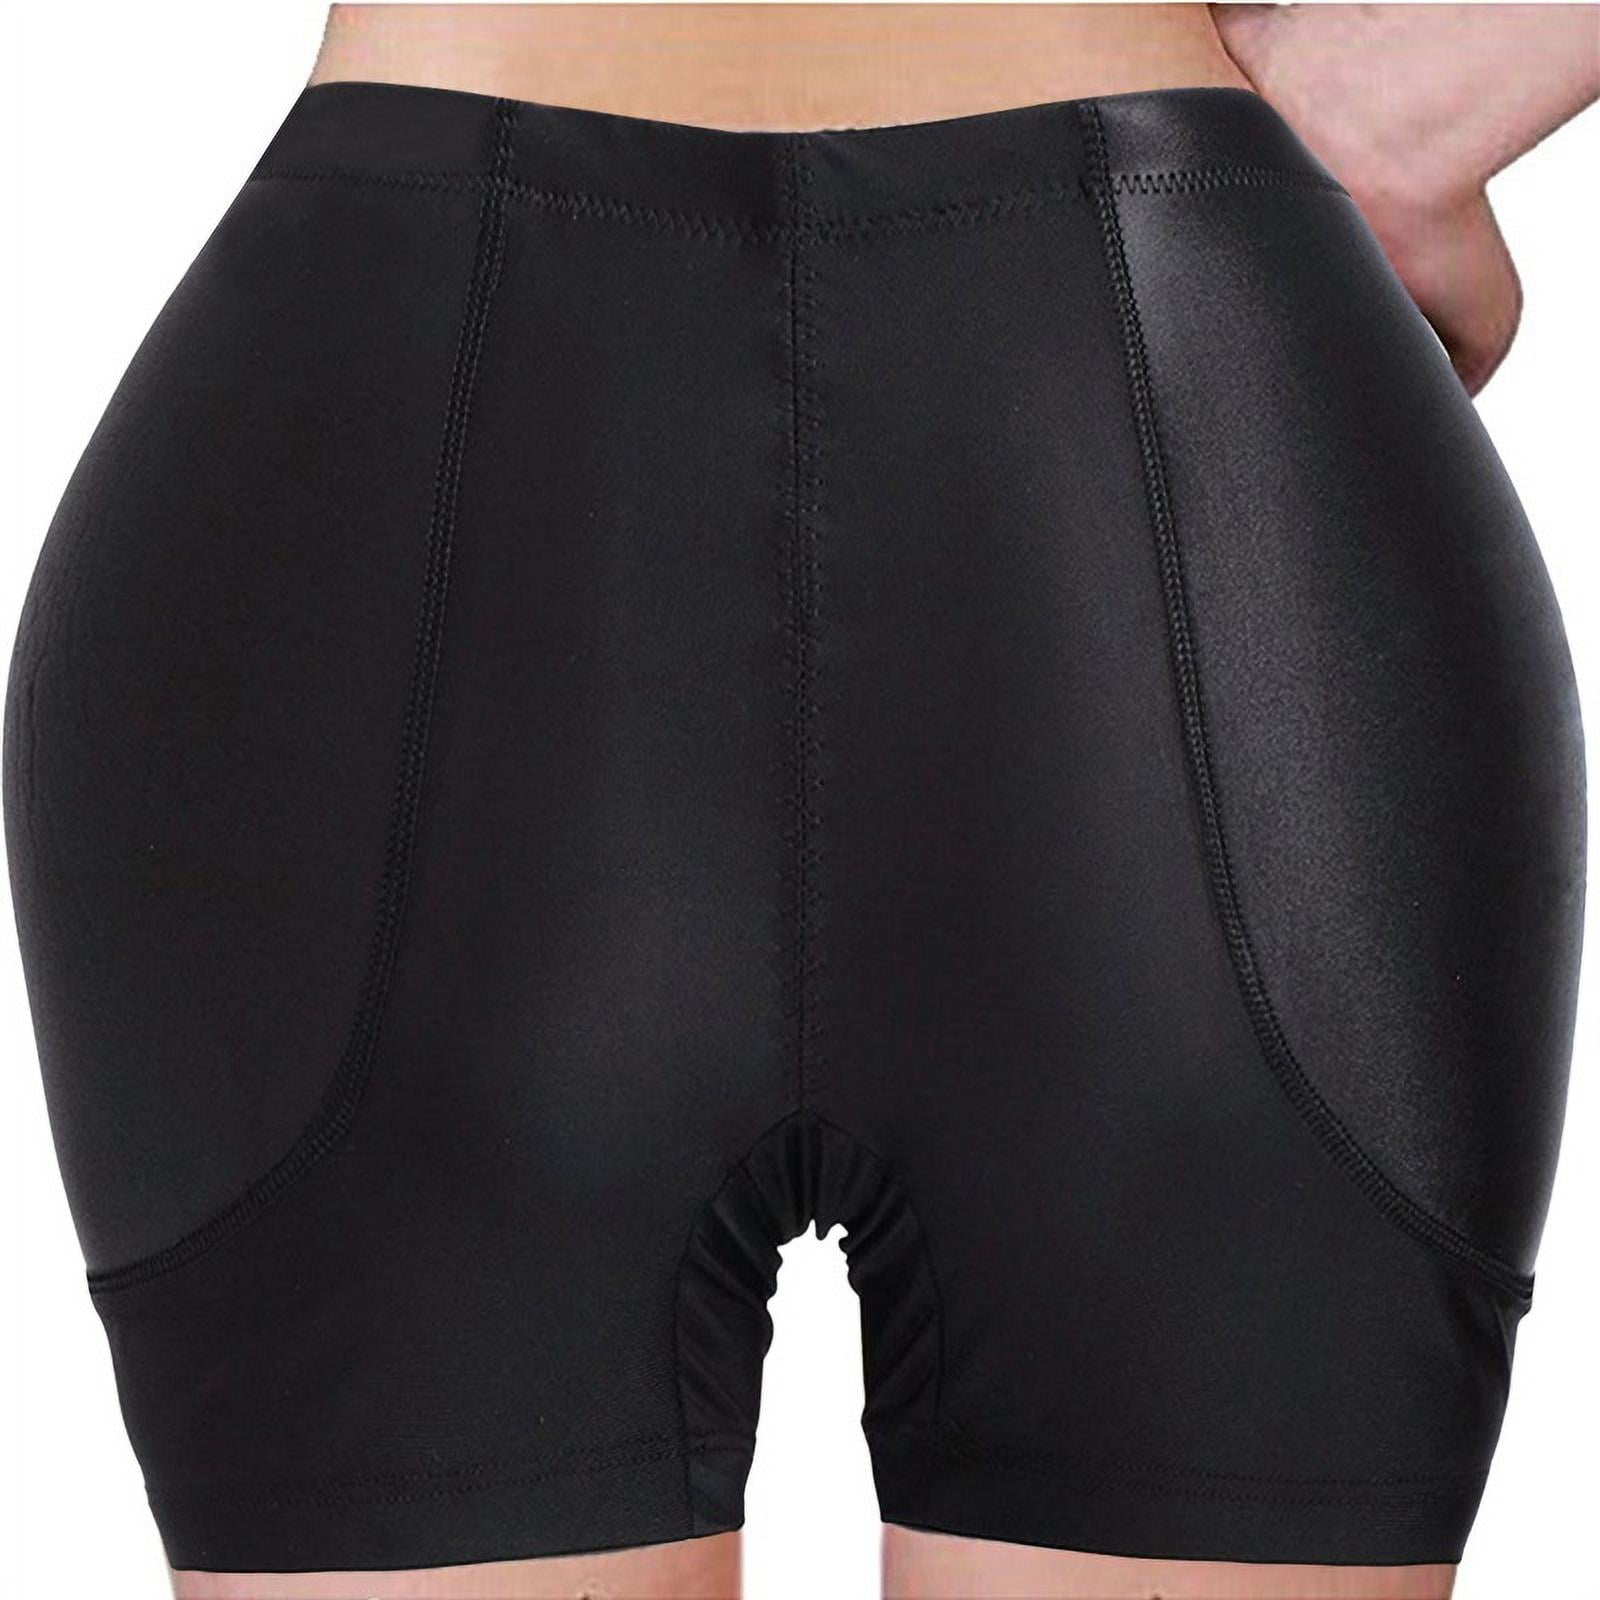 Clearance Women Plus Size Butt Lifter Hip Enhancer Pads Underwear ...